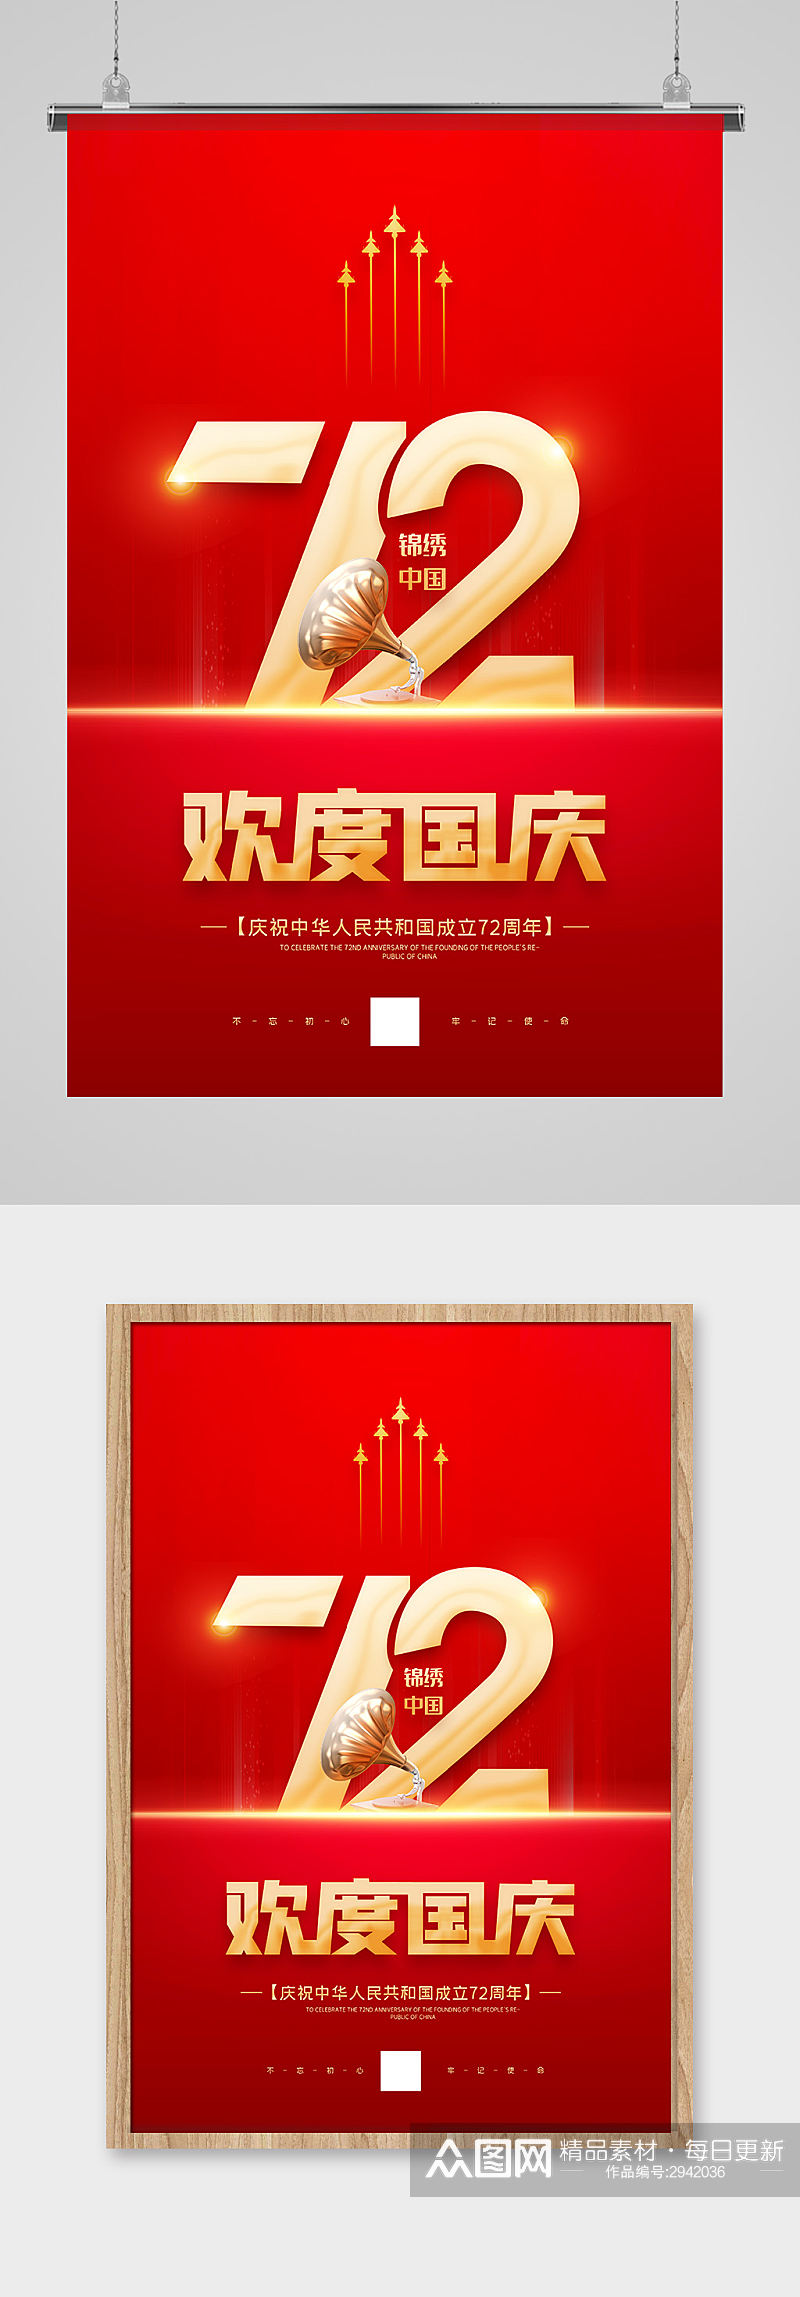 红色喜庆欢度国庆72周年海报设计素材